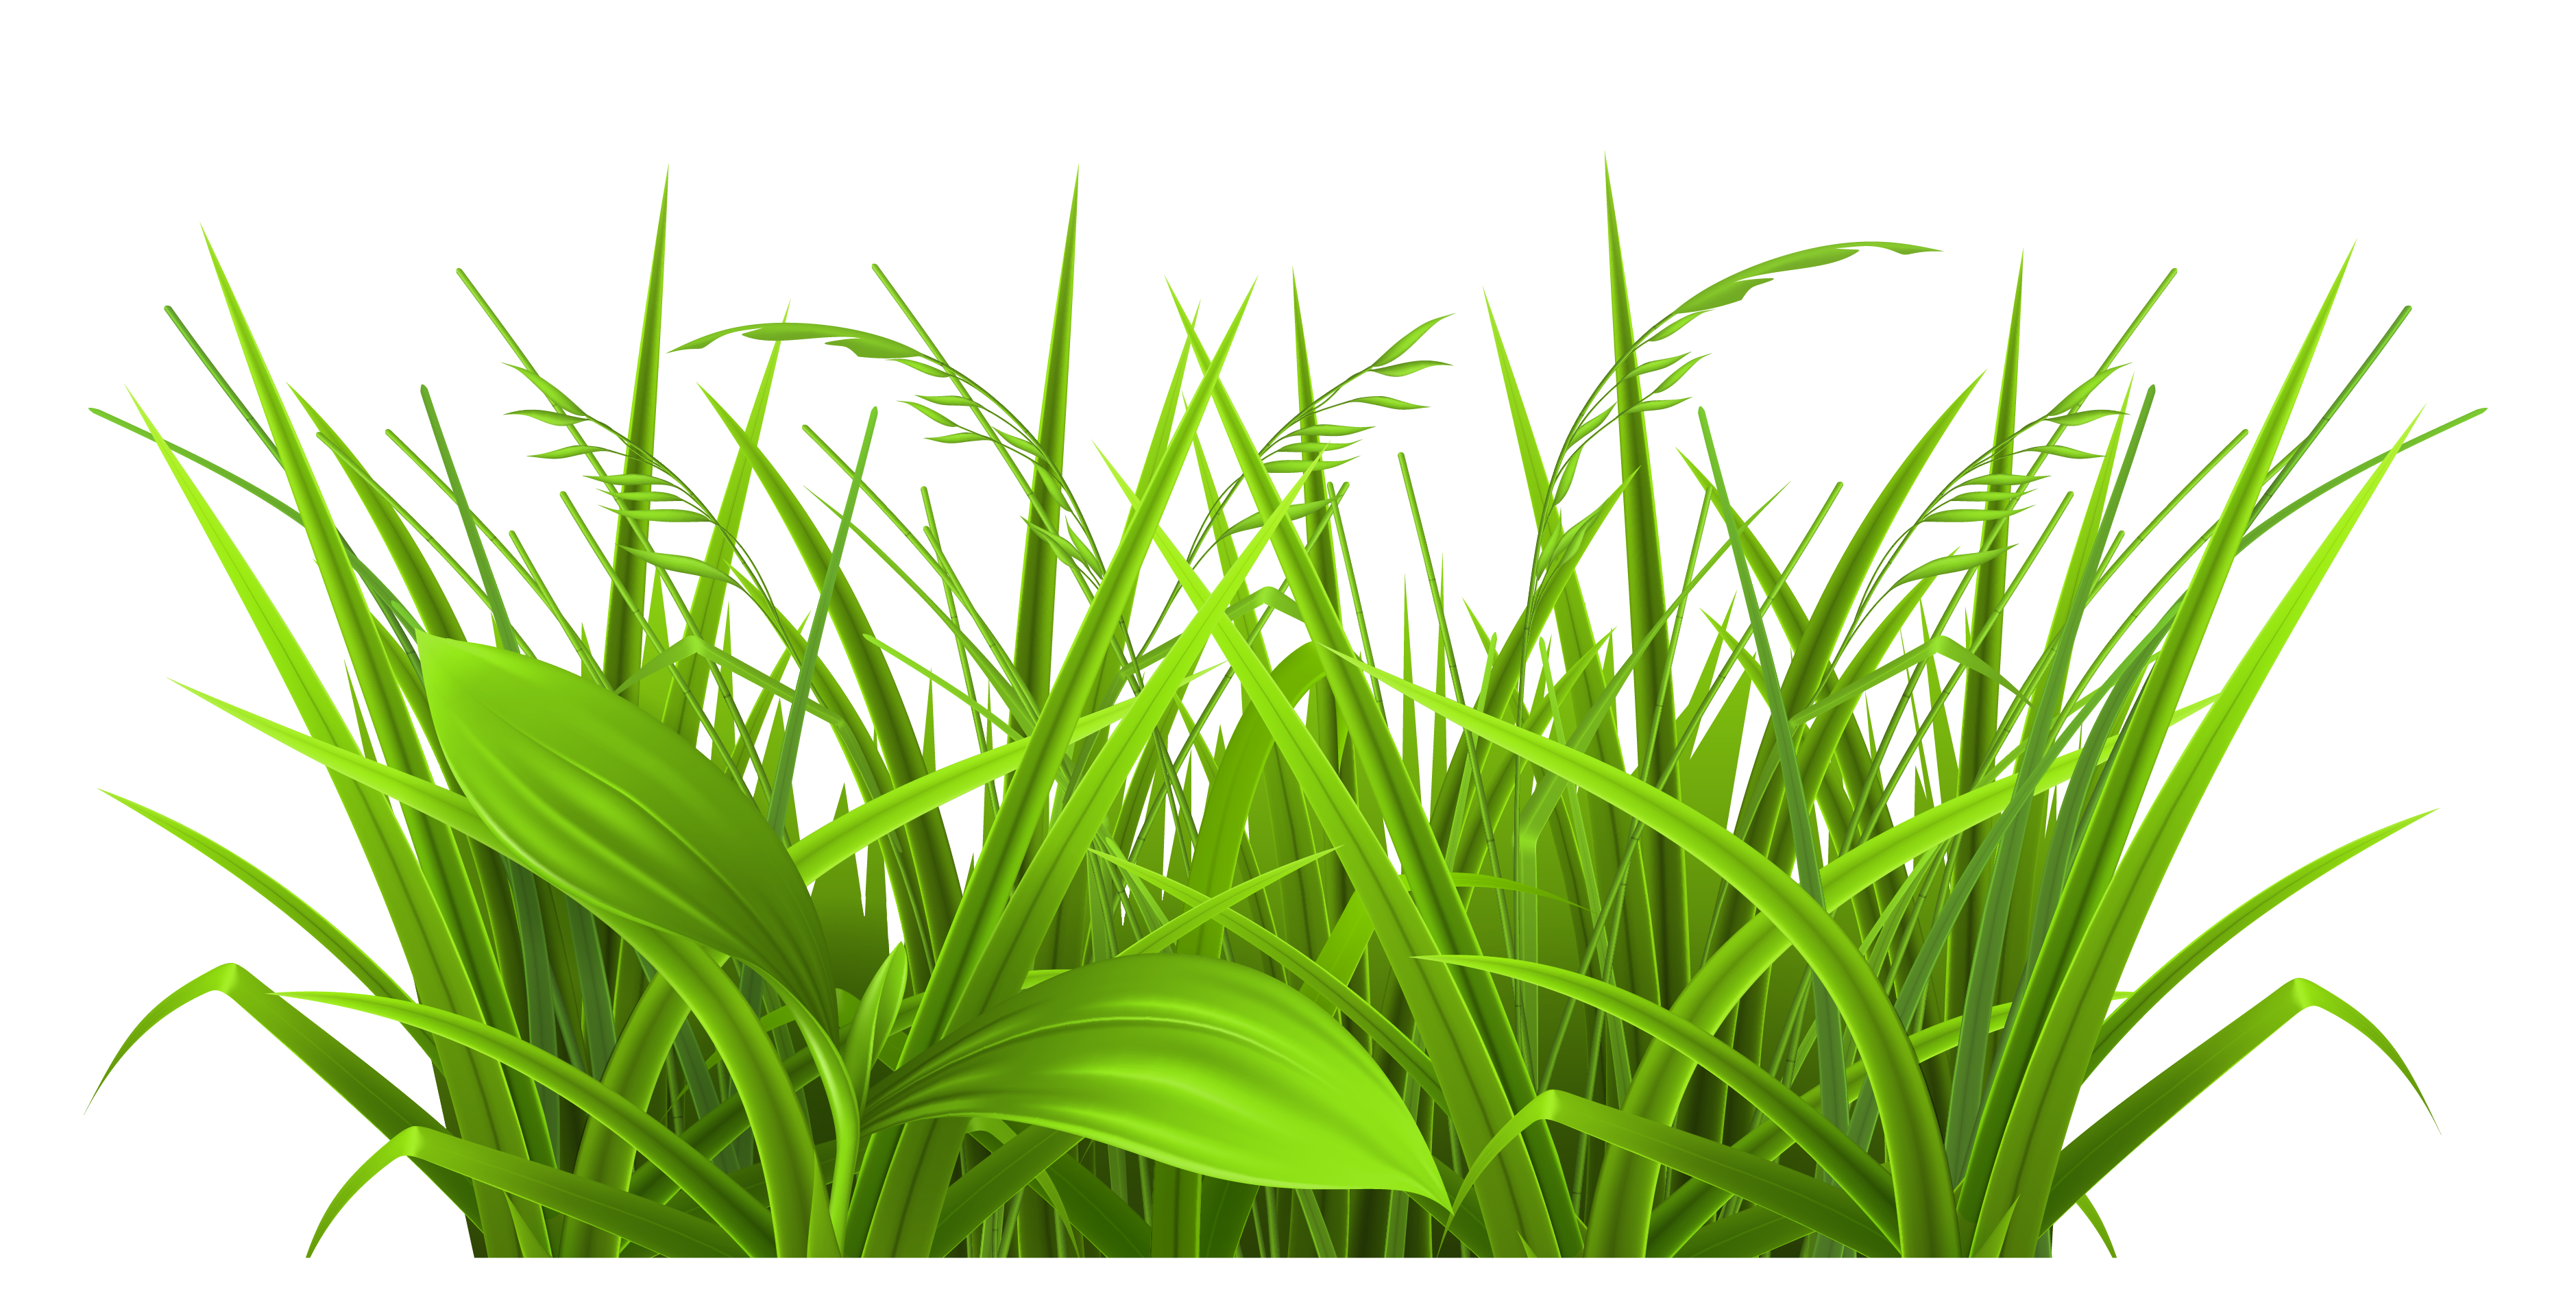 Grass Clipart And Green Grass - Green Grass Clipart